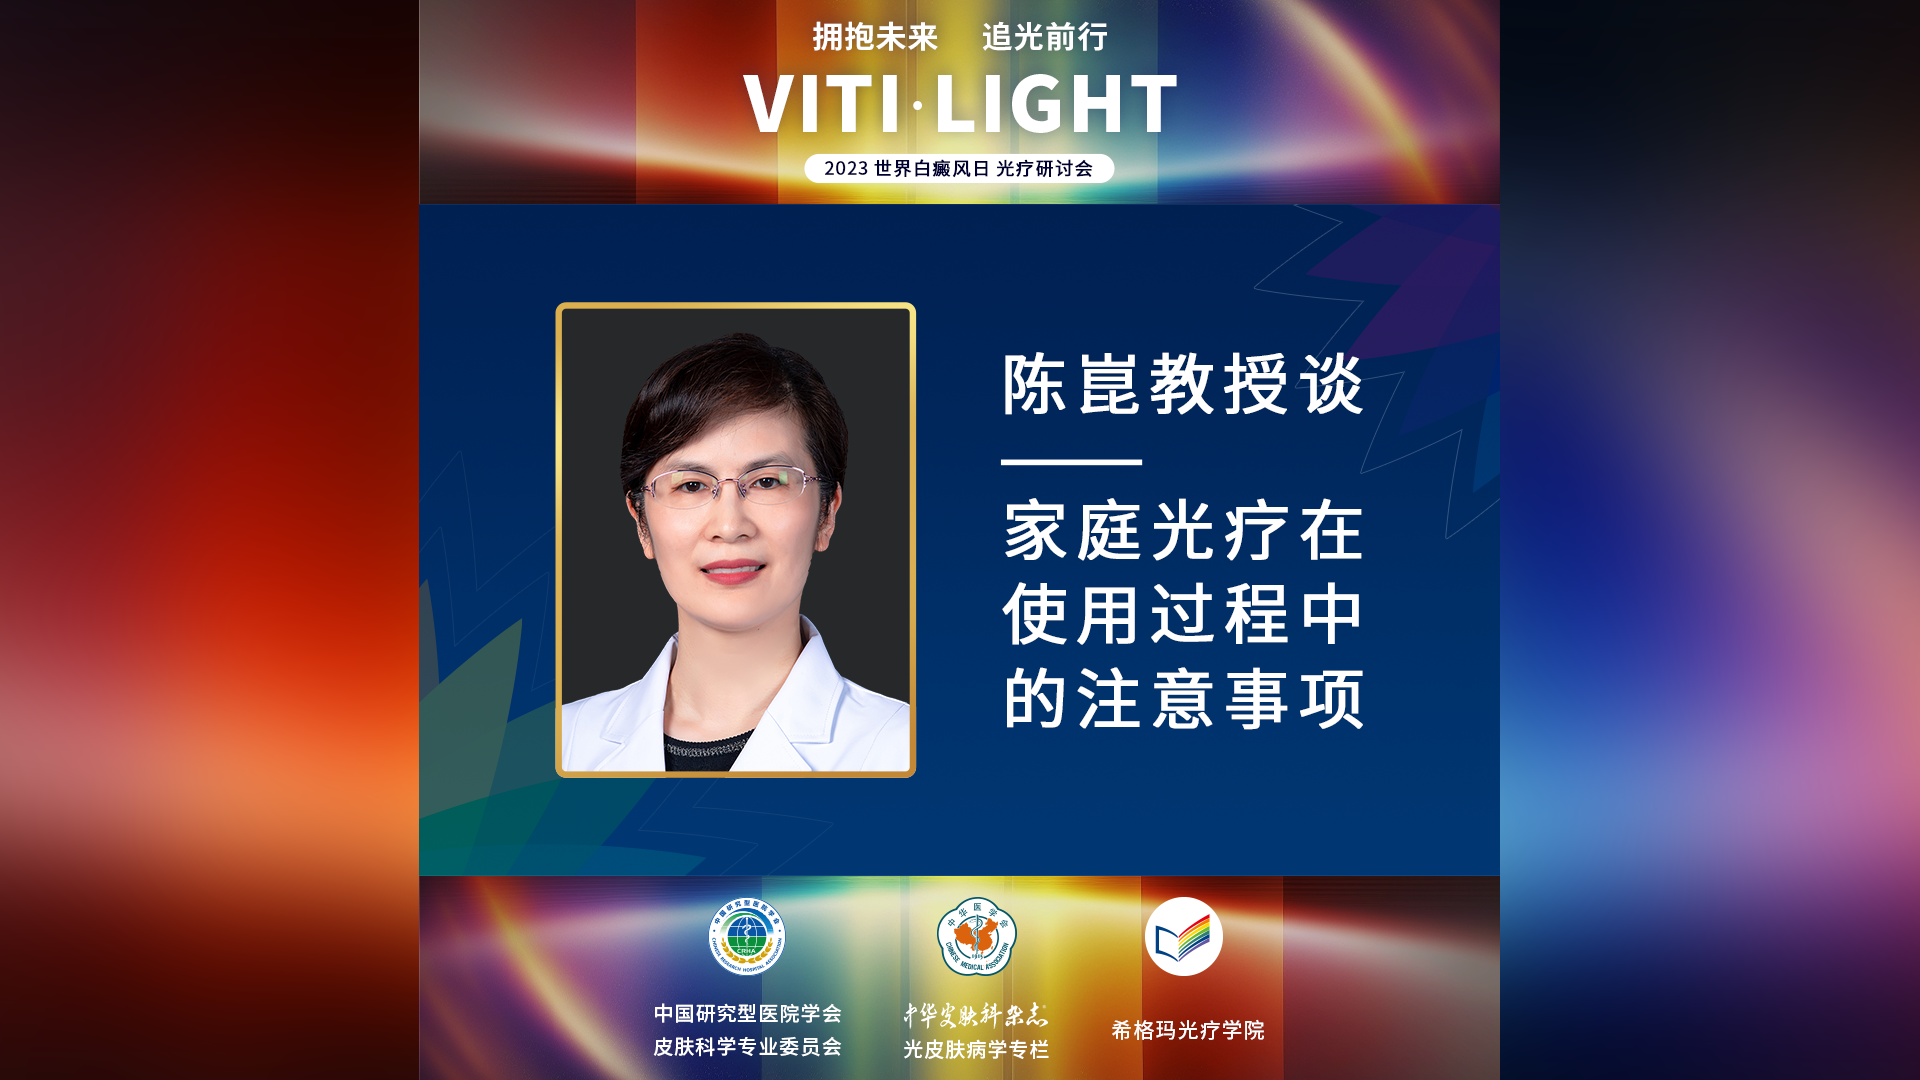 陈崑教授：家庭光疗在使用过程中的注意事项